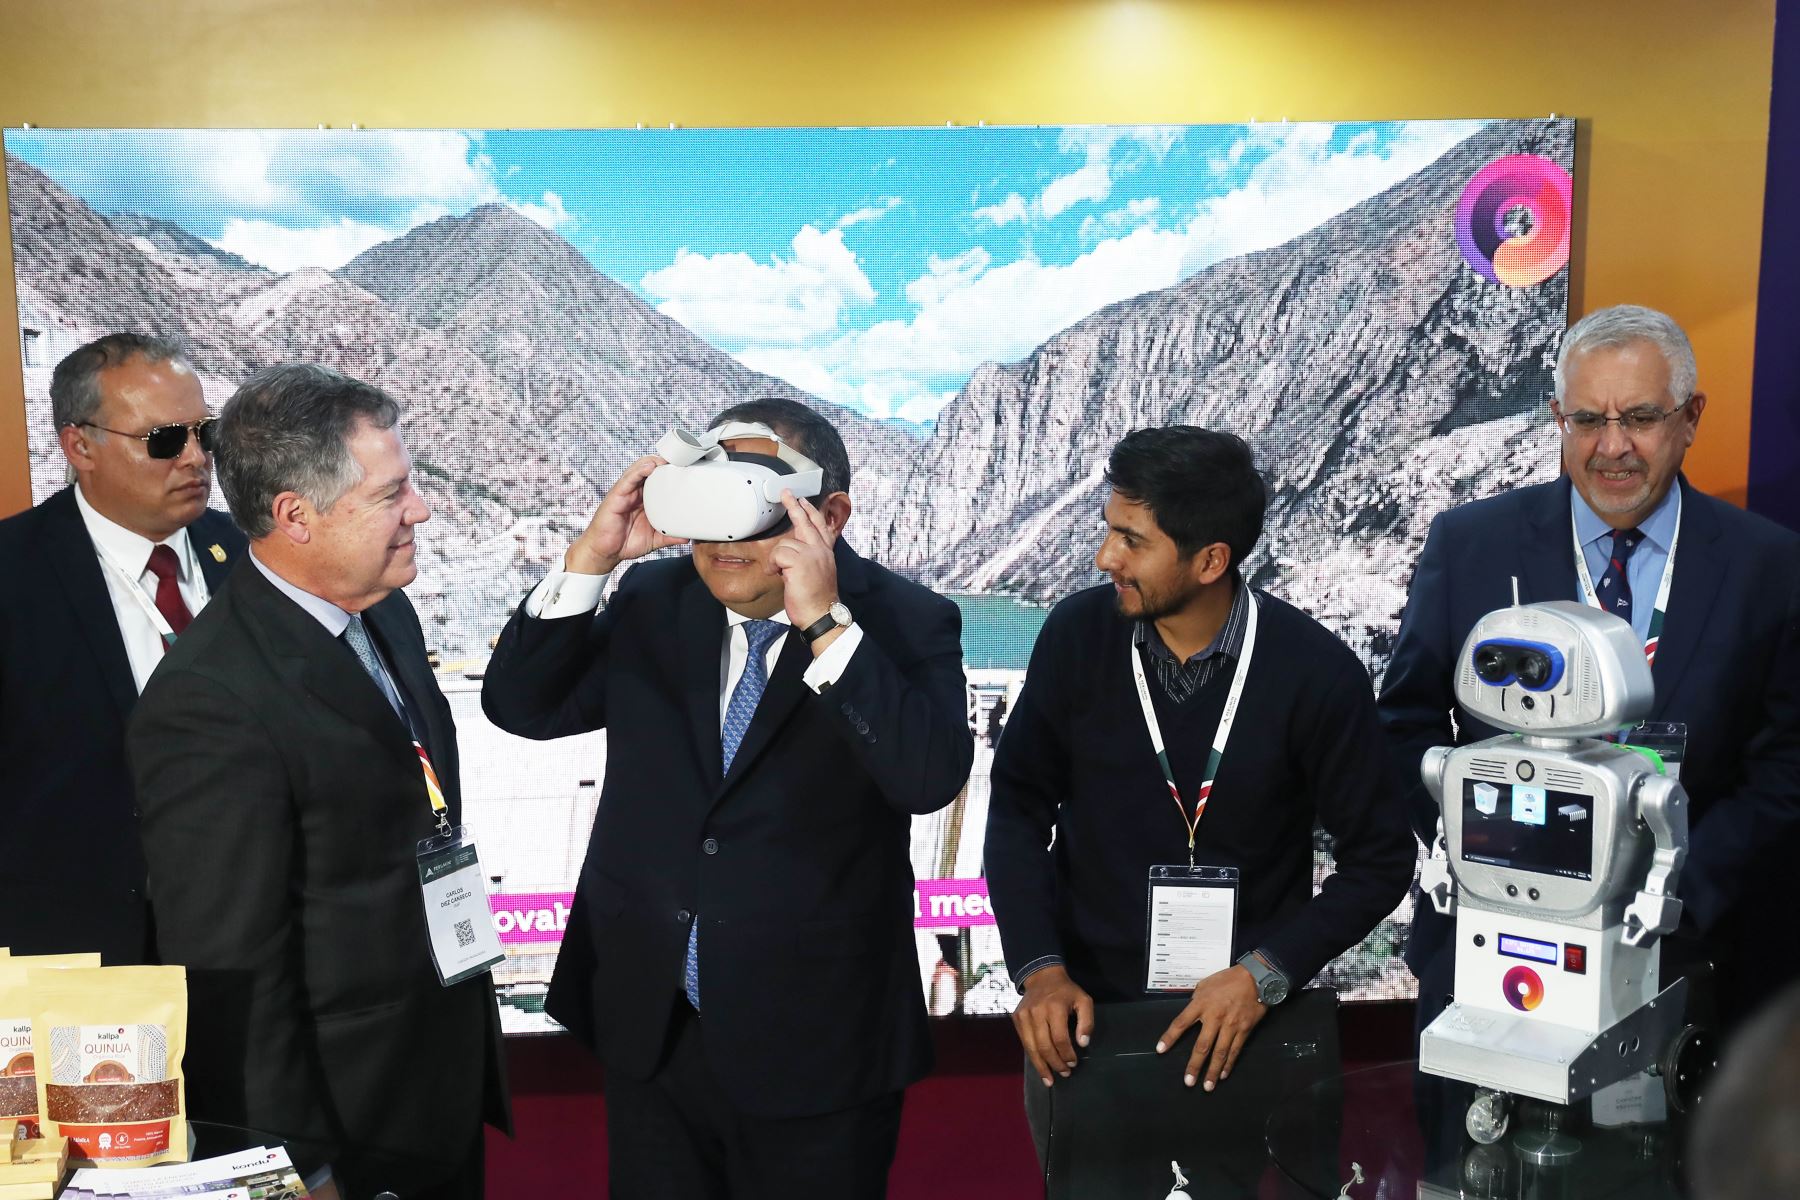 El premier Alberto Otárola participa en la Convención Minera PERUMIN en Arequipa y visita los stands de la cumbre minera.  Foto: ANDINA/Ricardo Cuba